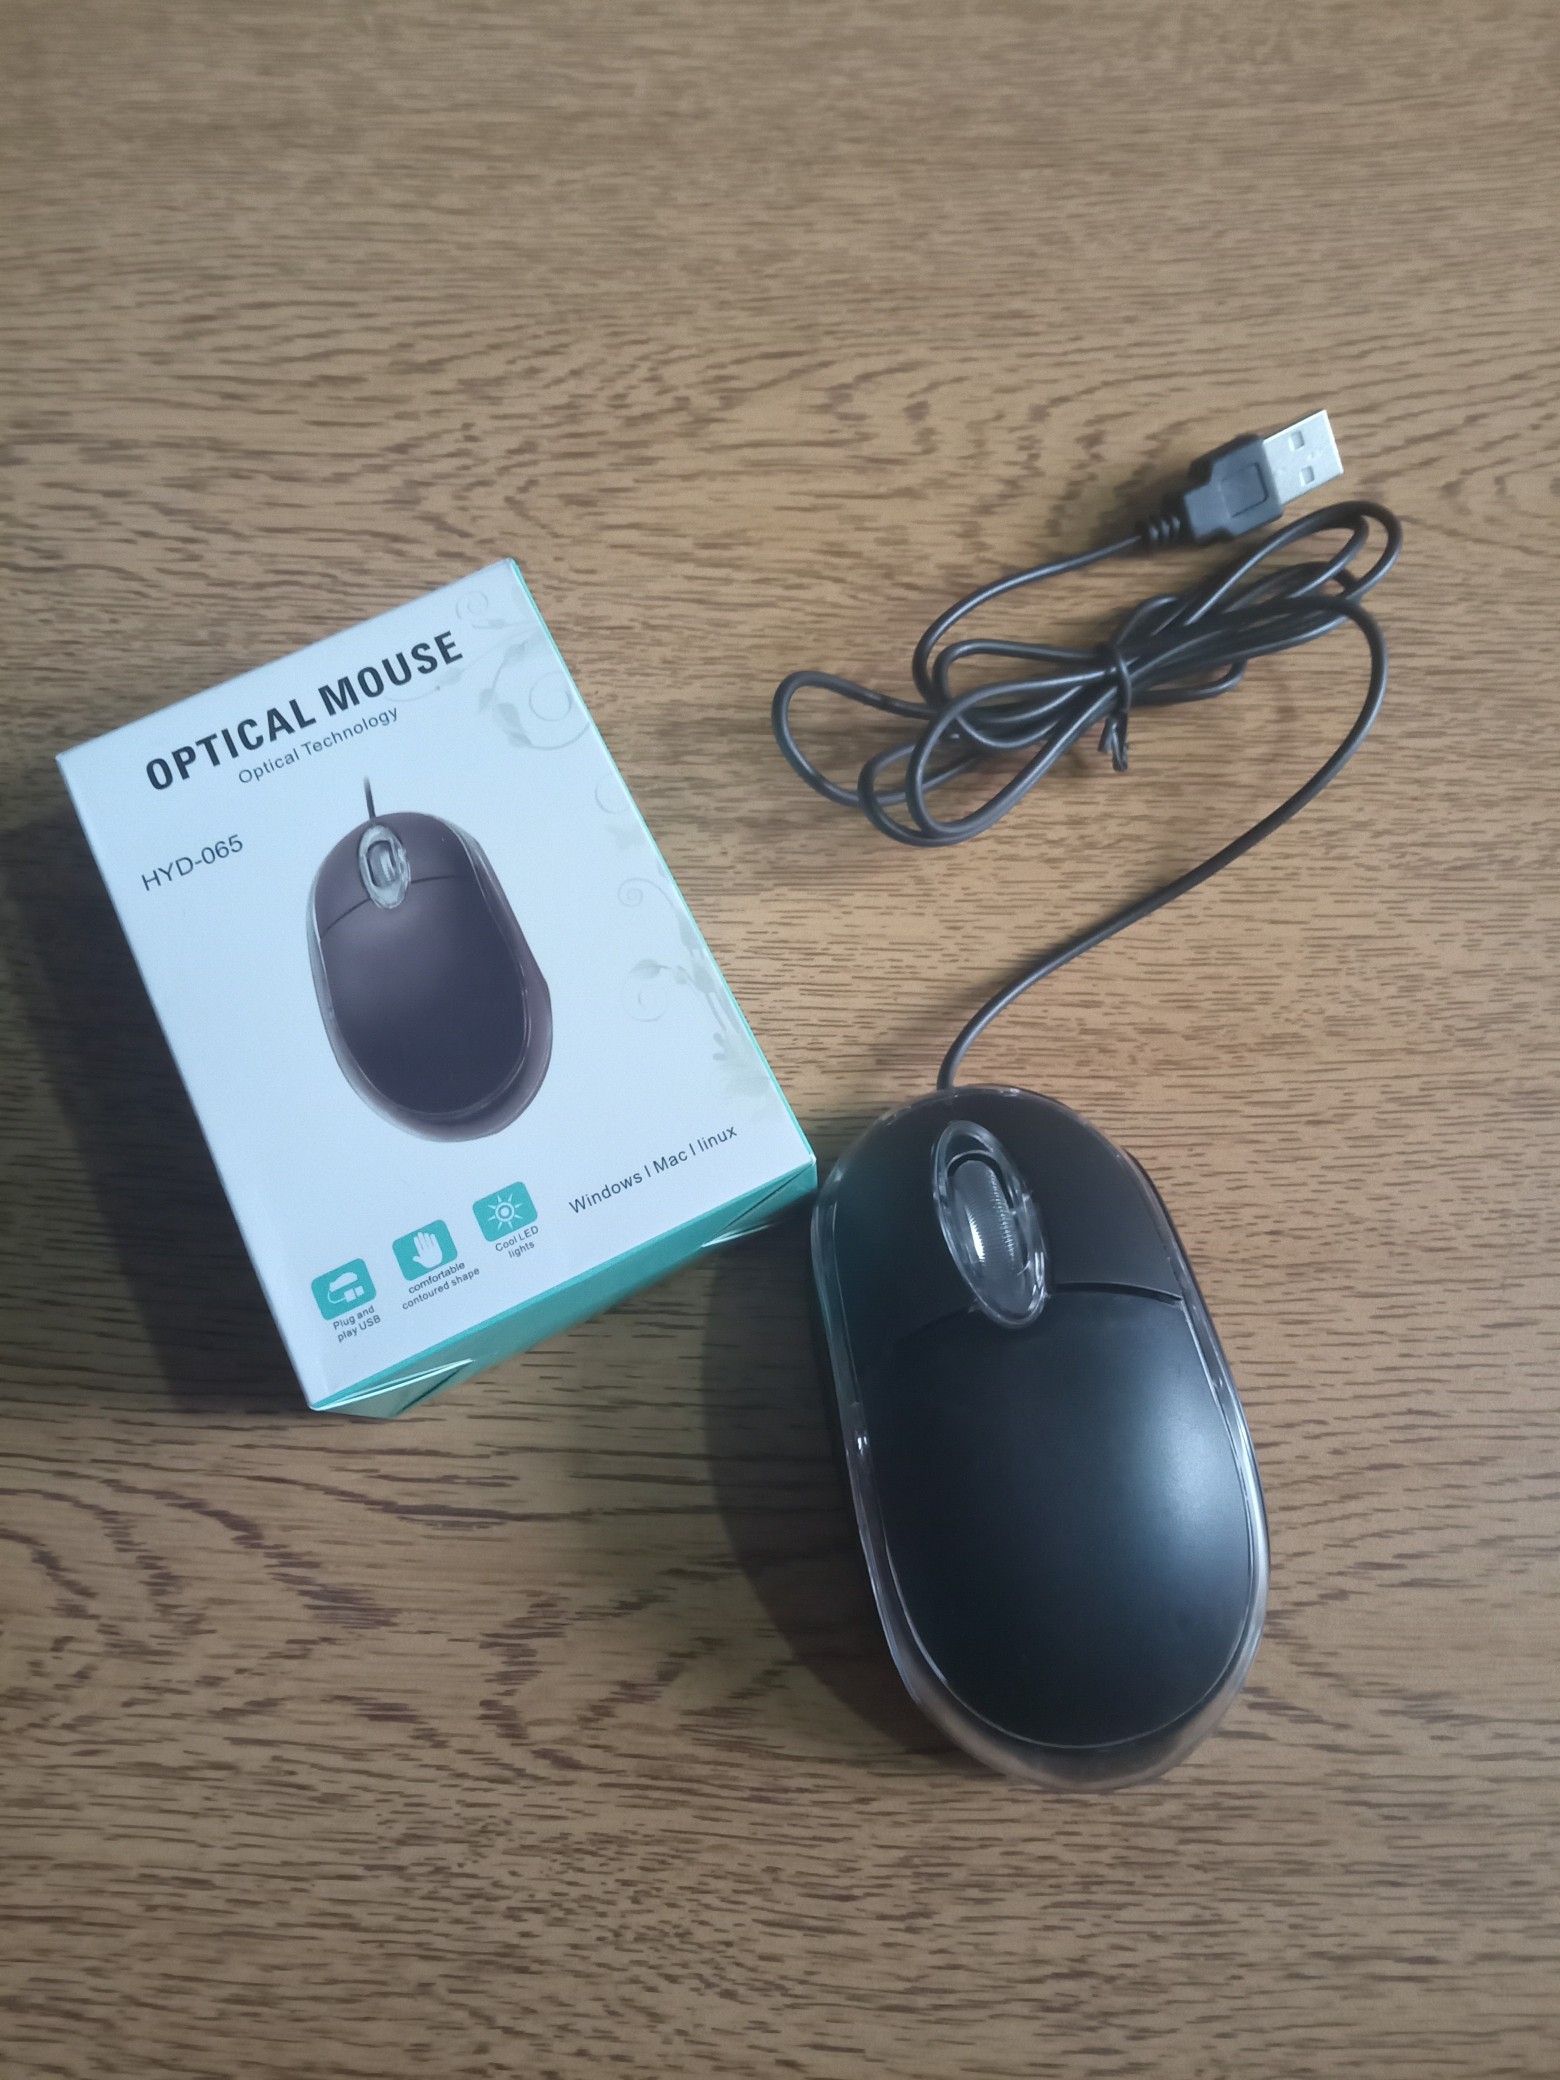 accesorios para electronica - Mouse Óptico 0